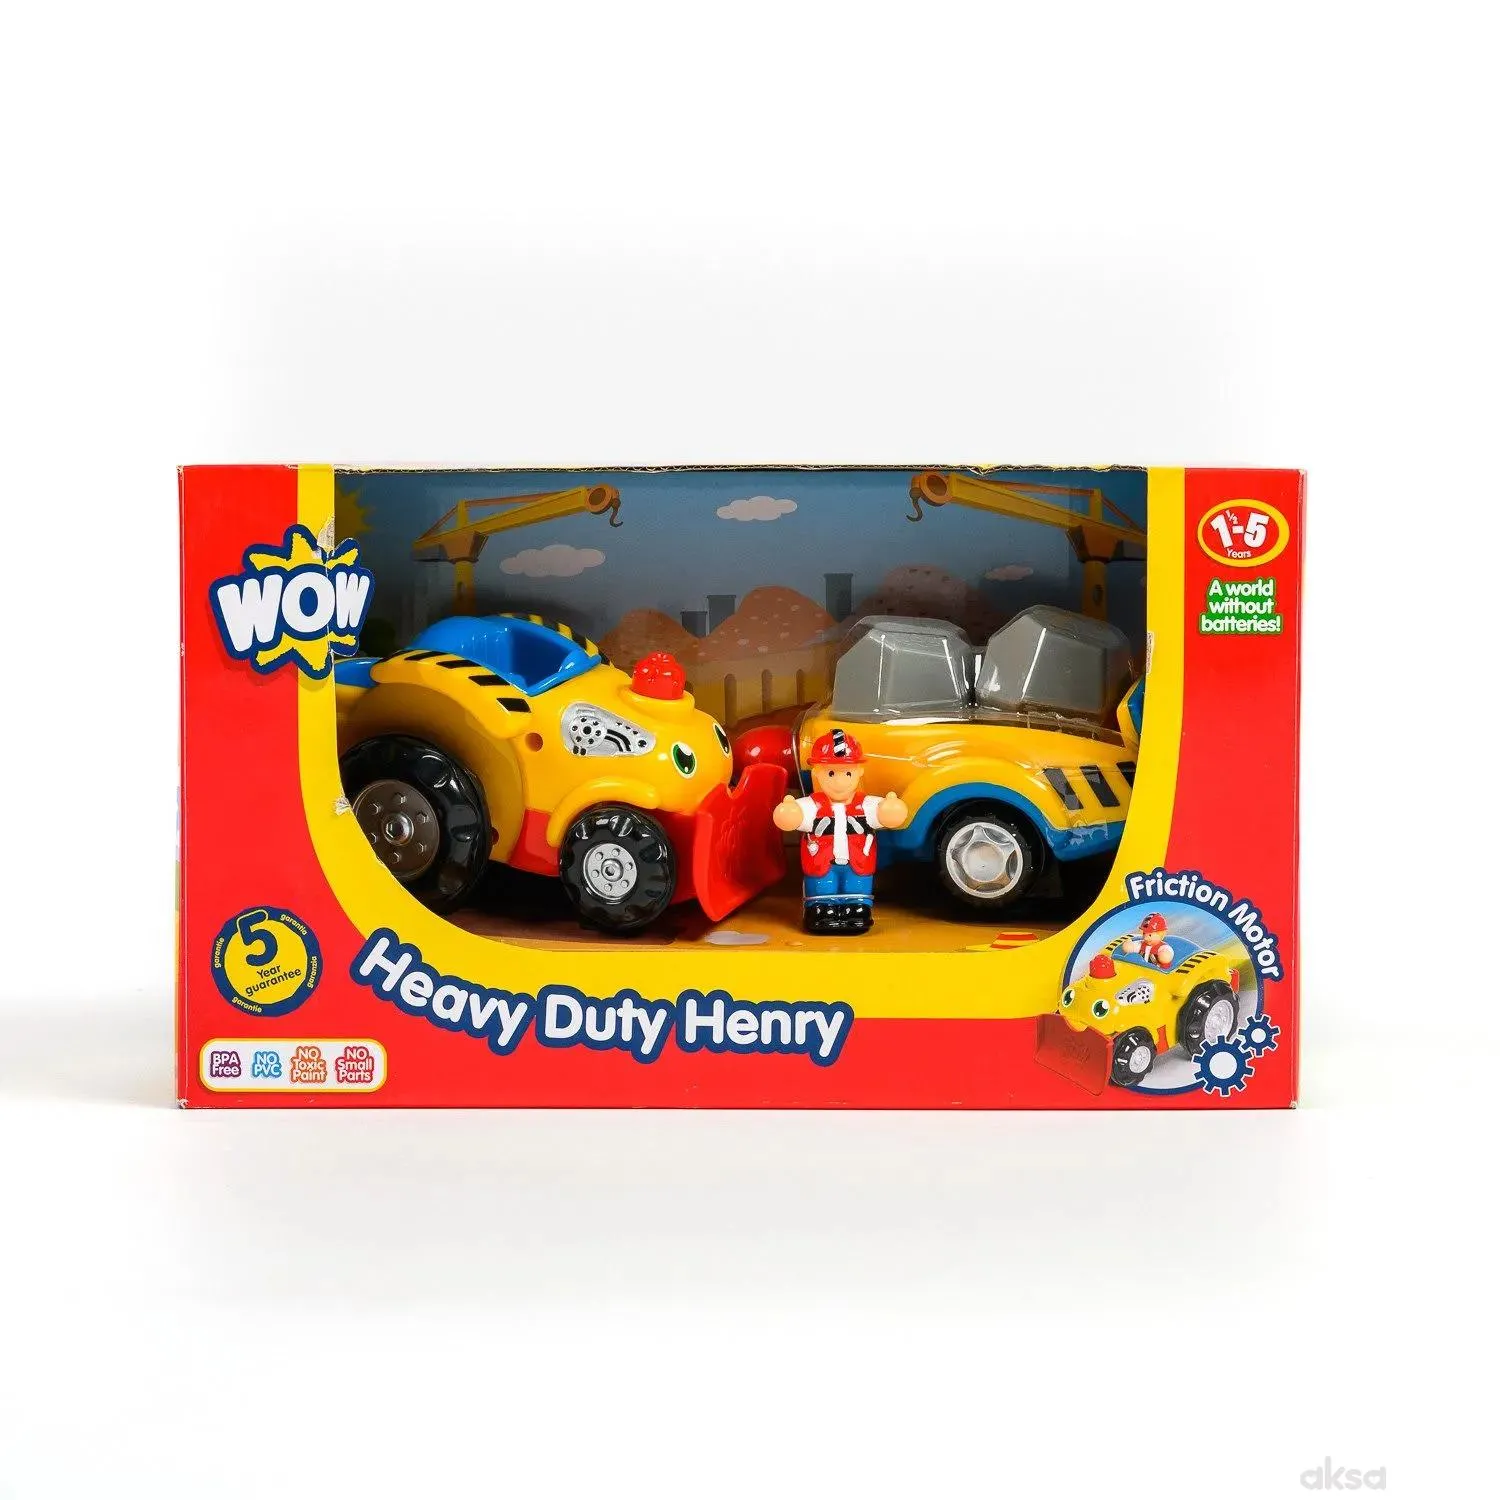 Wow igračka bager Heavy Duty Henry 